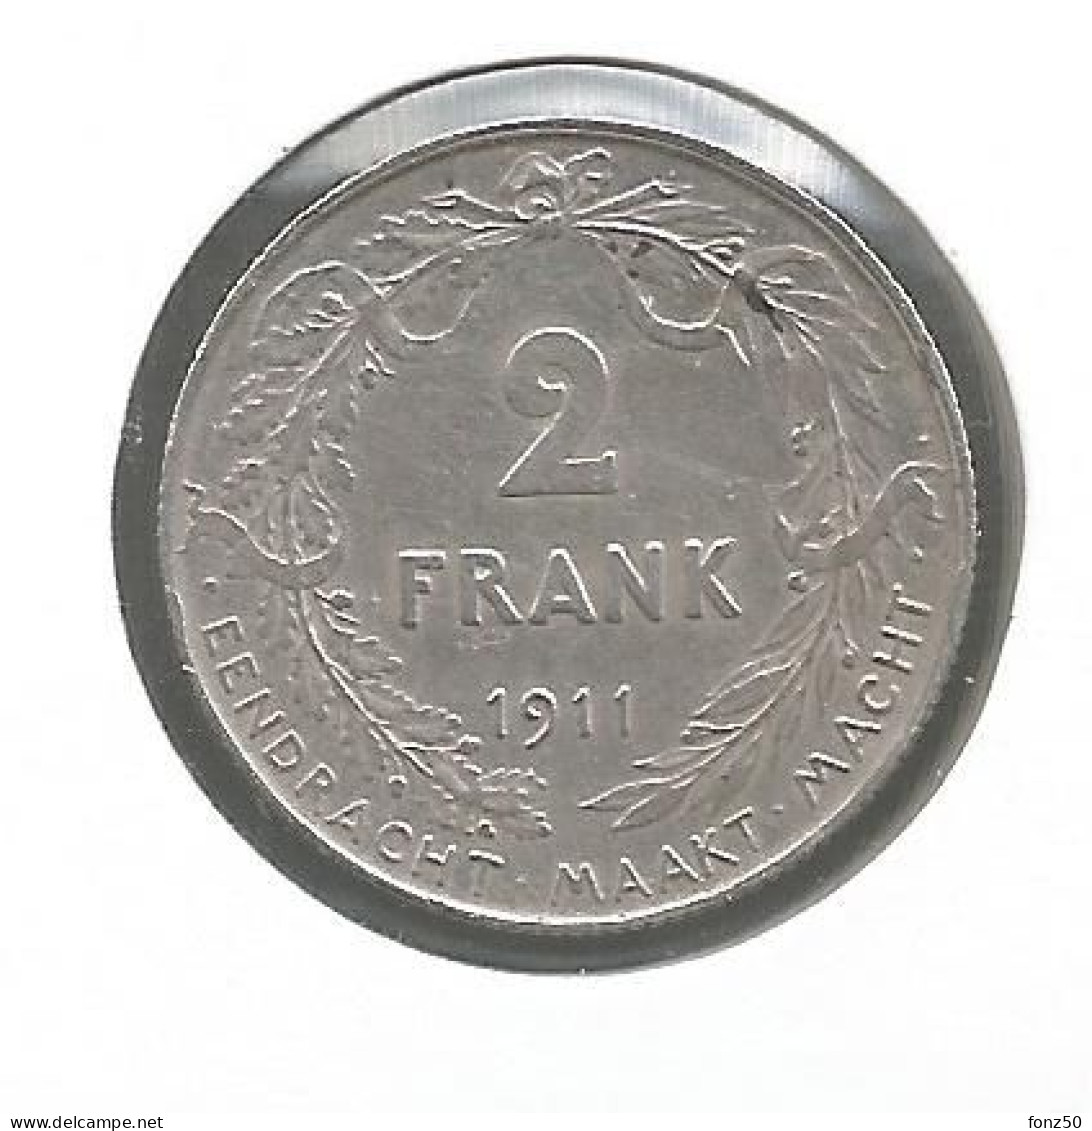 ALBERT I * 2 Frank 1911 Vlaams * Prachtig * Nr 12980 - 2 Frank